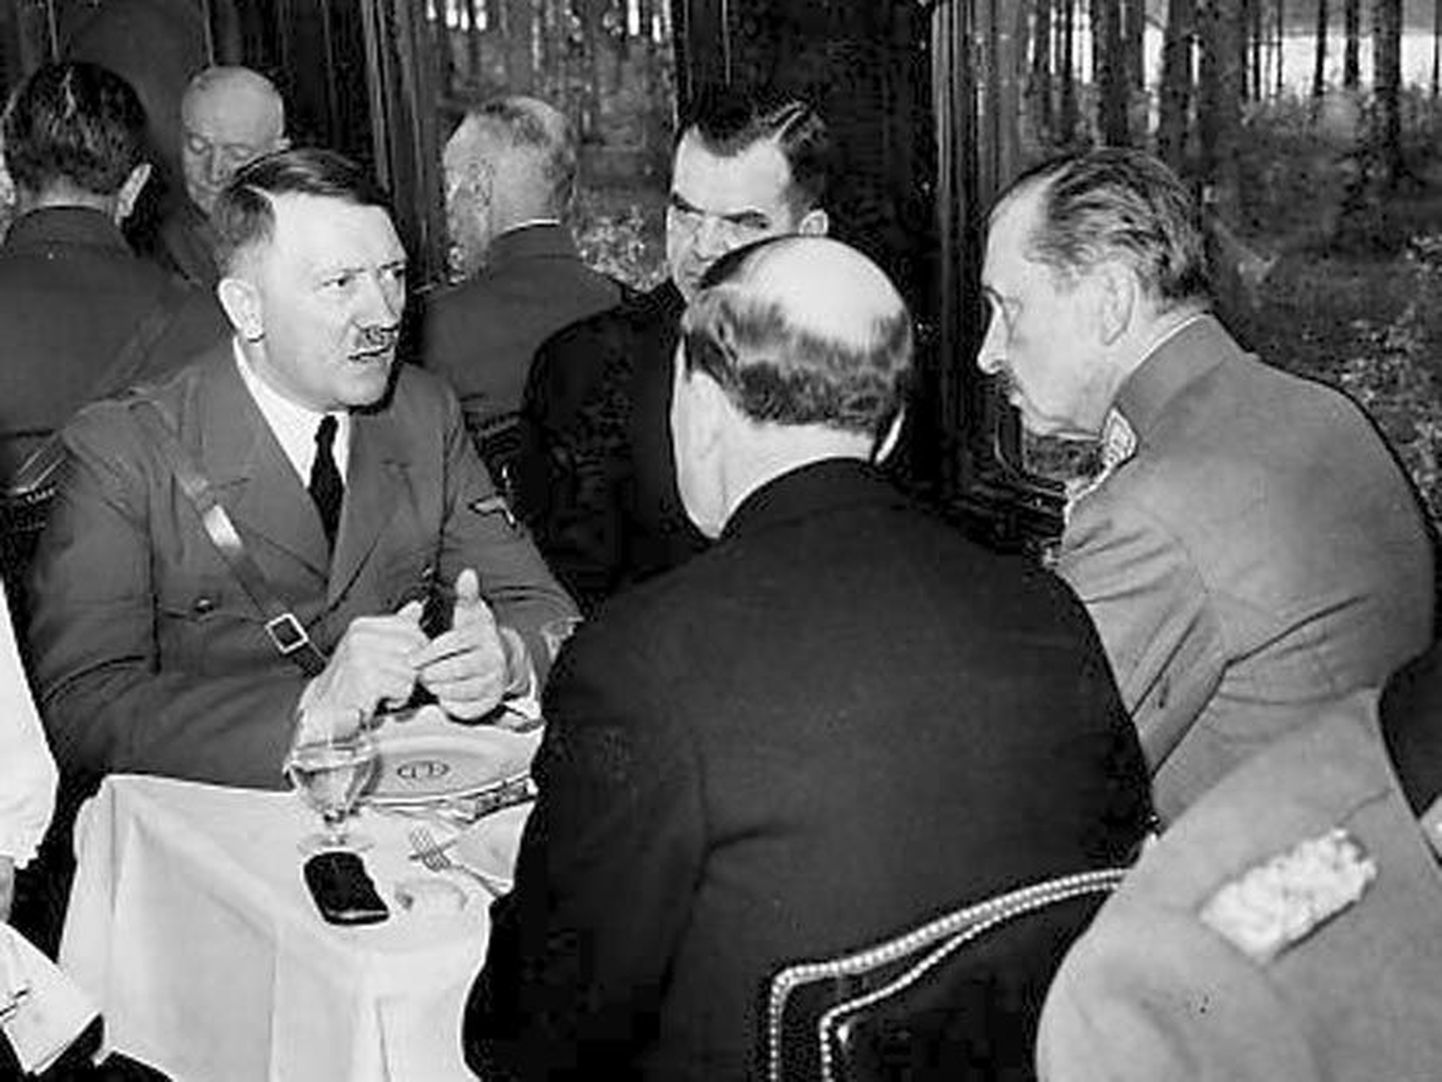 Liitlase innustamiseks külastas Adolf Hitler 1942. aastal Soome vägede ülemjuhatajat marssal Carl Gustav Emil von Mannerheimi tema juubeli puhul Soomes Immolas.
Arhiiv